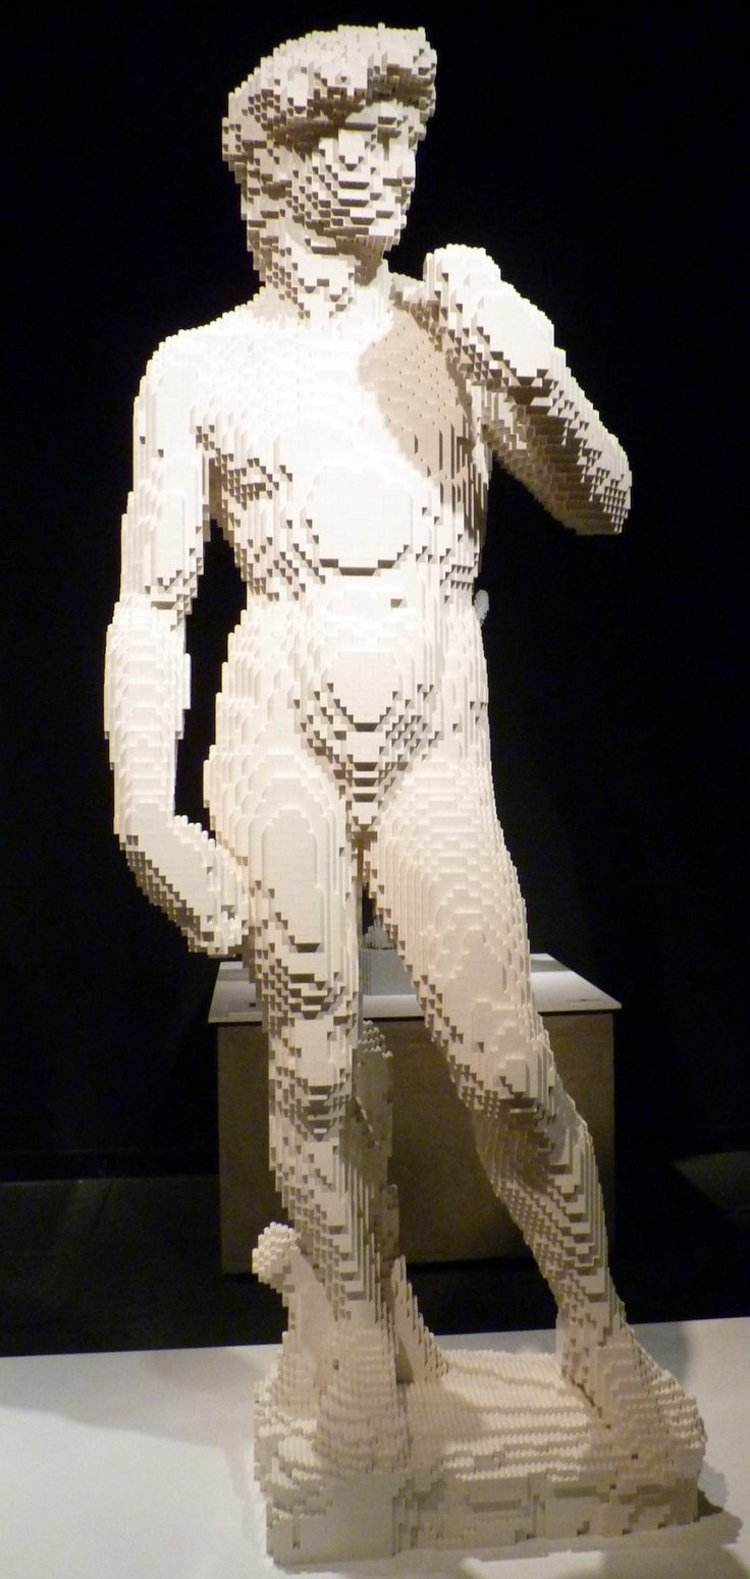 konst-från-lego-grekisk-skulptur-david-vit